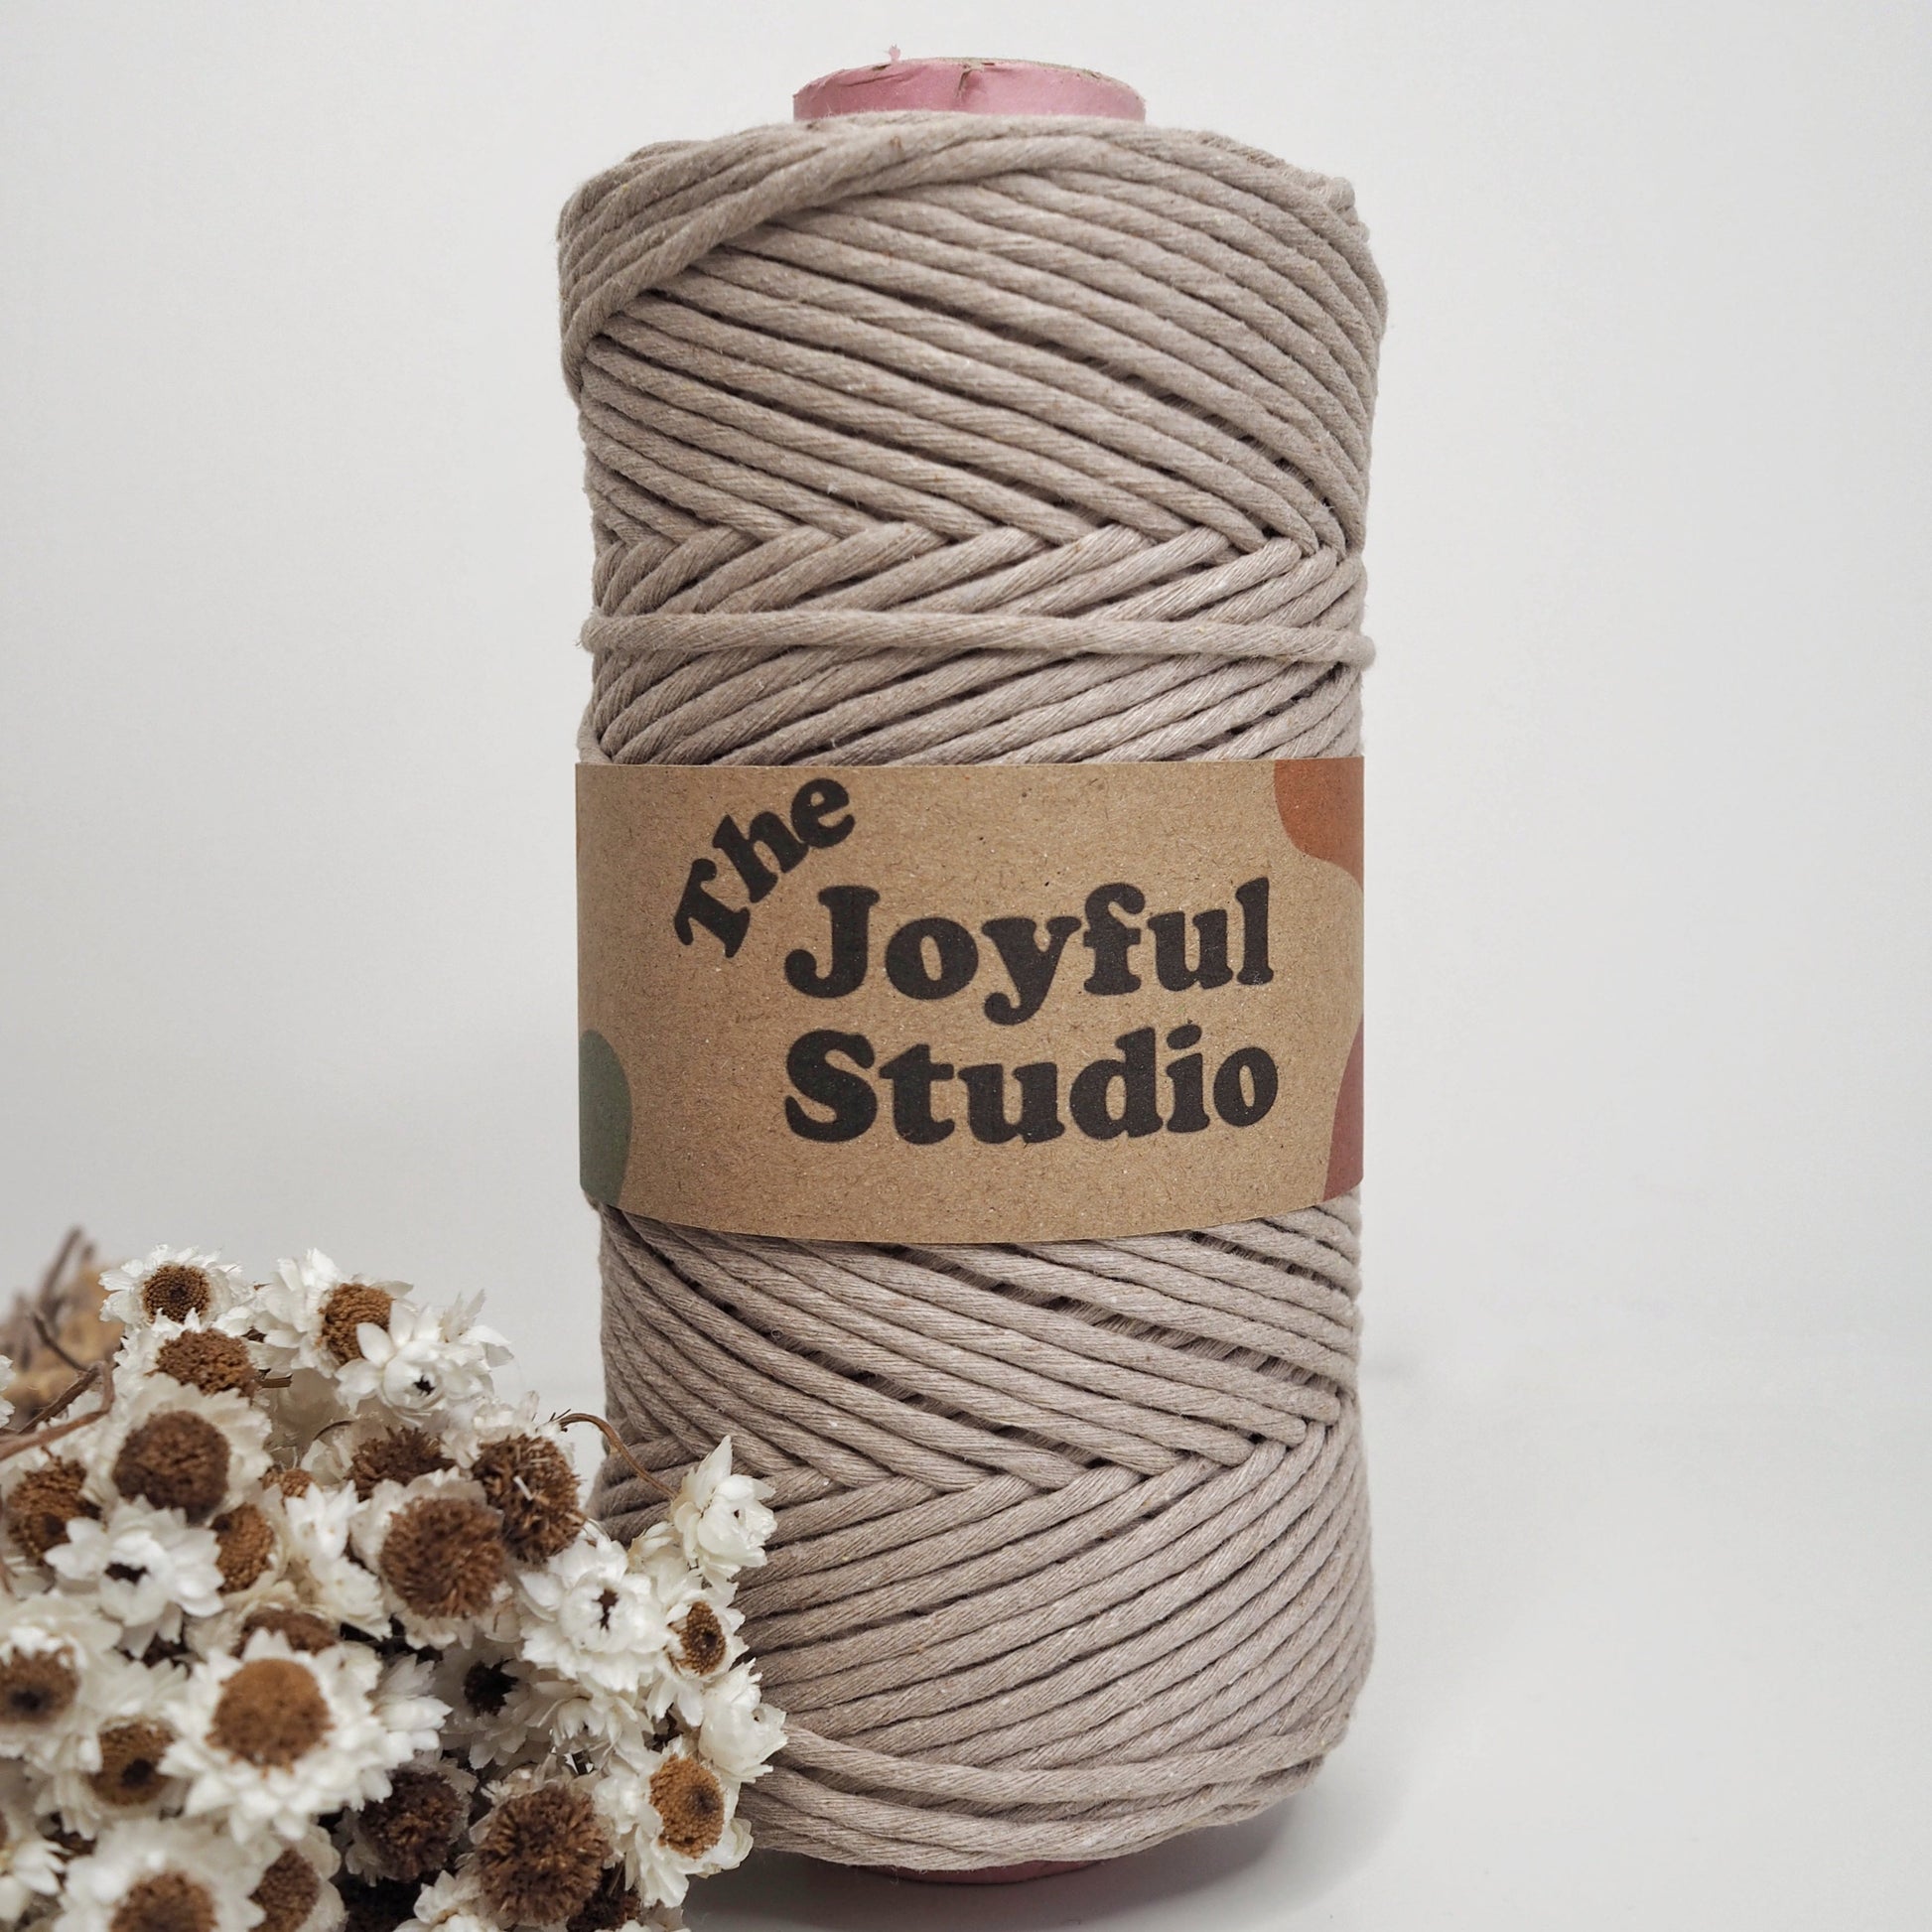 3mm Latte single twist string. The Joyful studio macrame